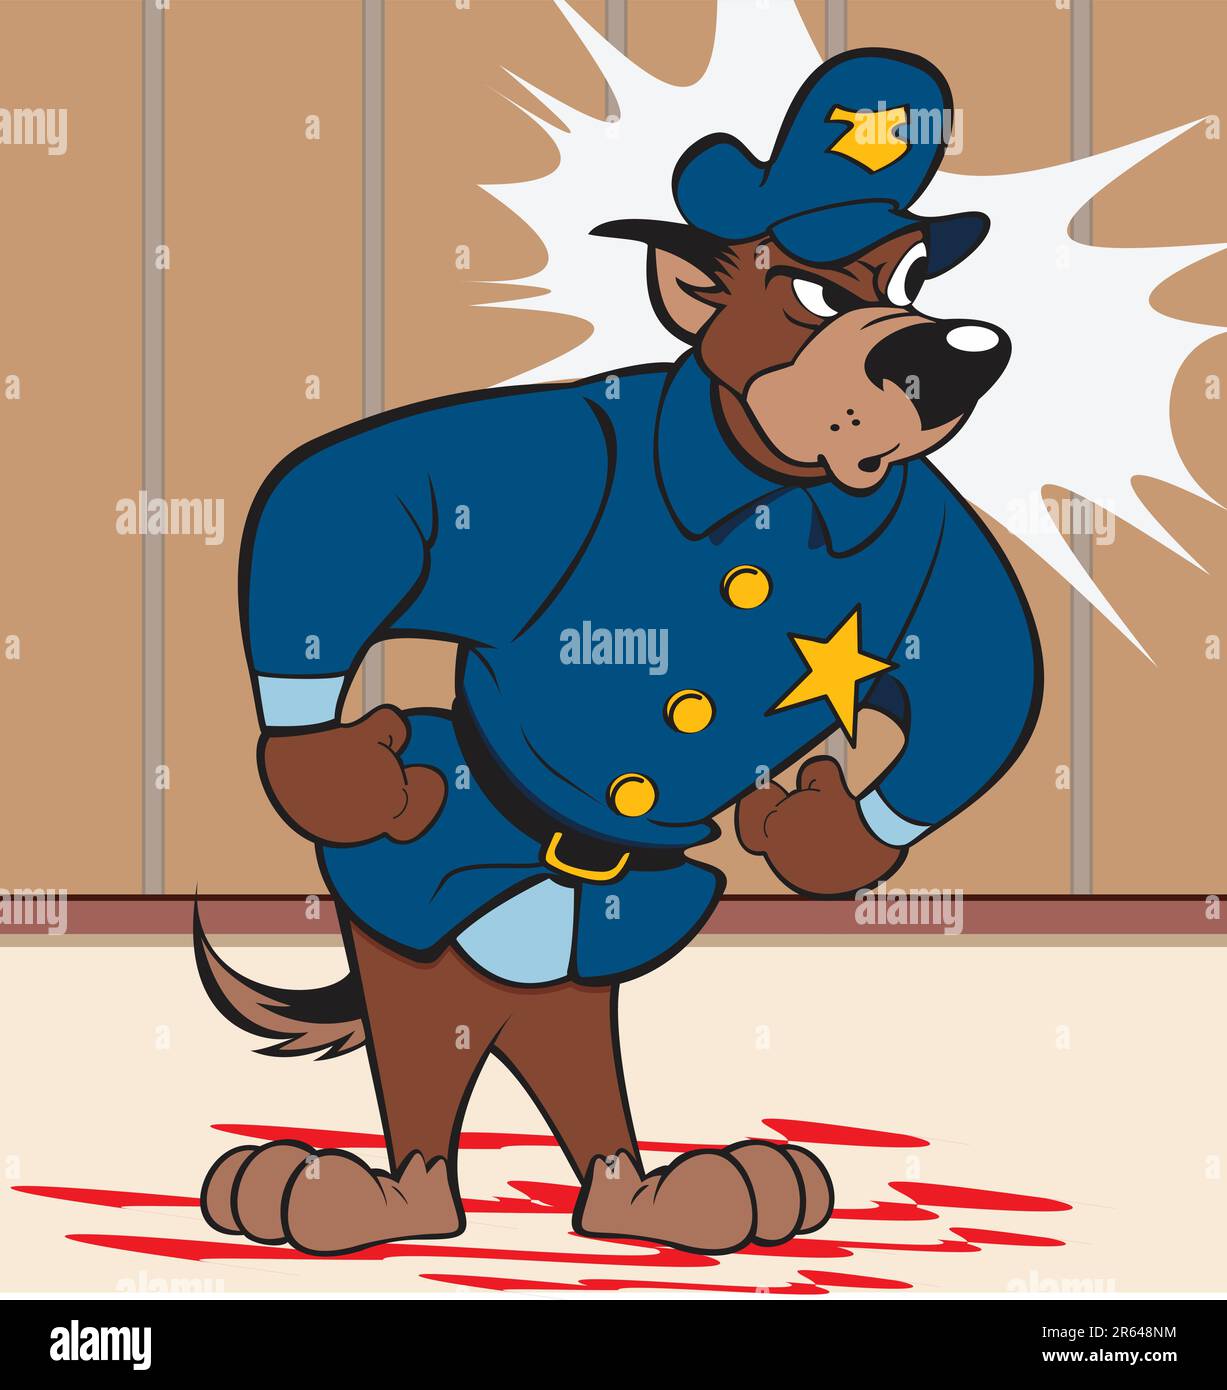 Illustrazione vettoriale di un personaggio di cane della polizia. Disegno eseguito in Adobe Illustrator, salvato come file EPS AI8. Può essere scalato a qualsiasi dimensione senza perdita di q... Illustrazione Vettoriale